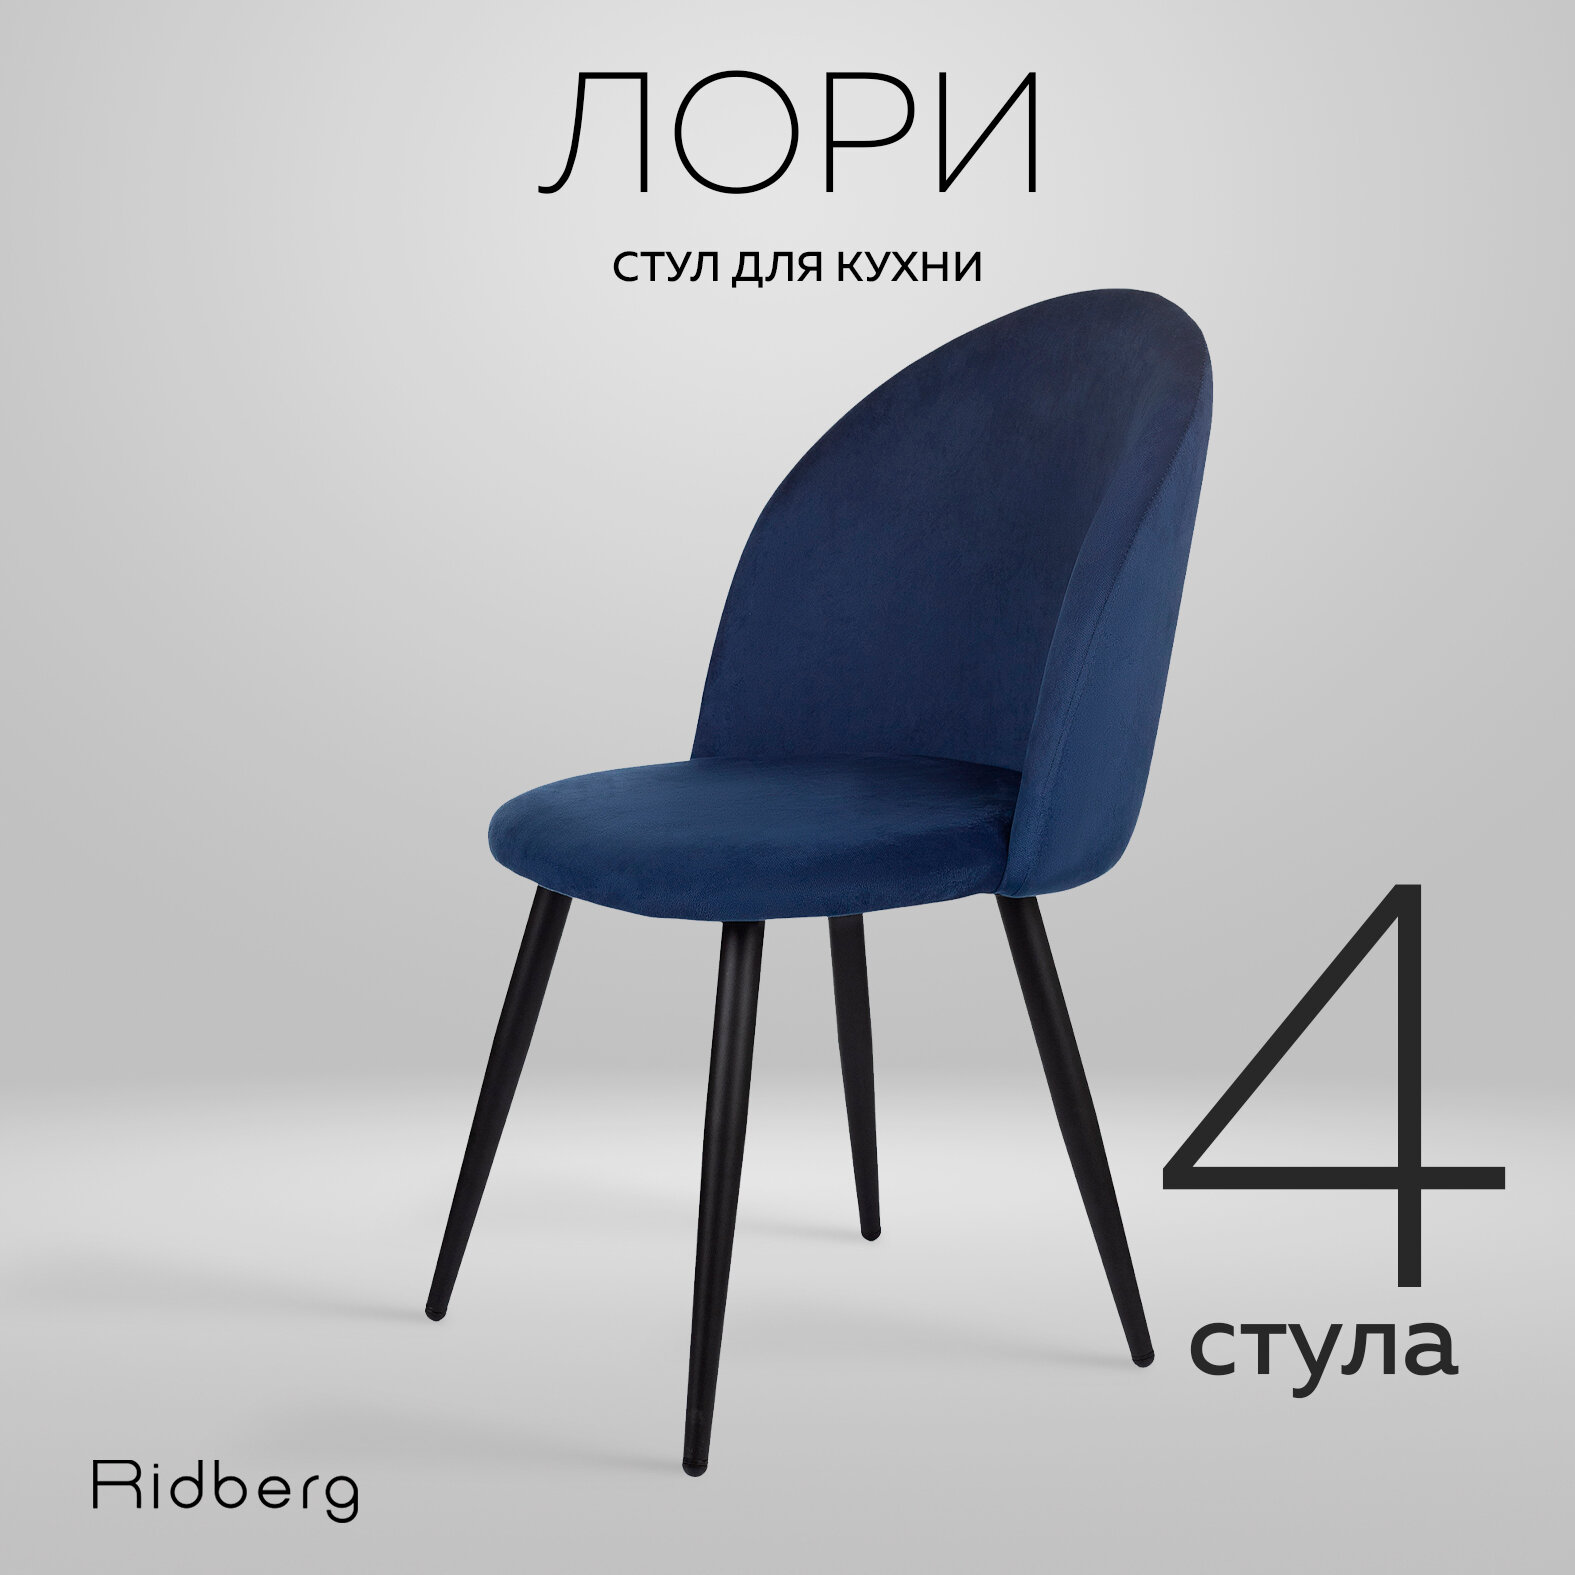 Комплект стульев для кухни и гостиной Ridberg Лори Velour, 4шт, синий, для дома, обеденный стул мягкий с боковой поддержкой спины